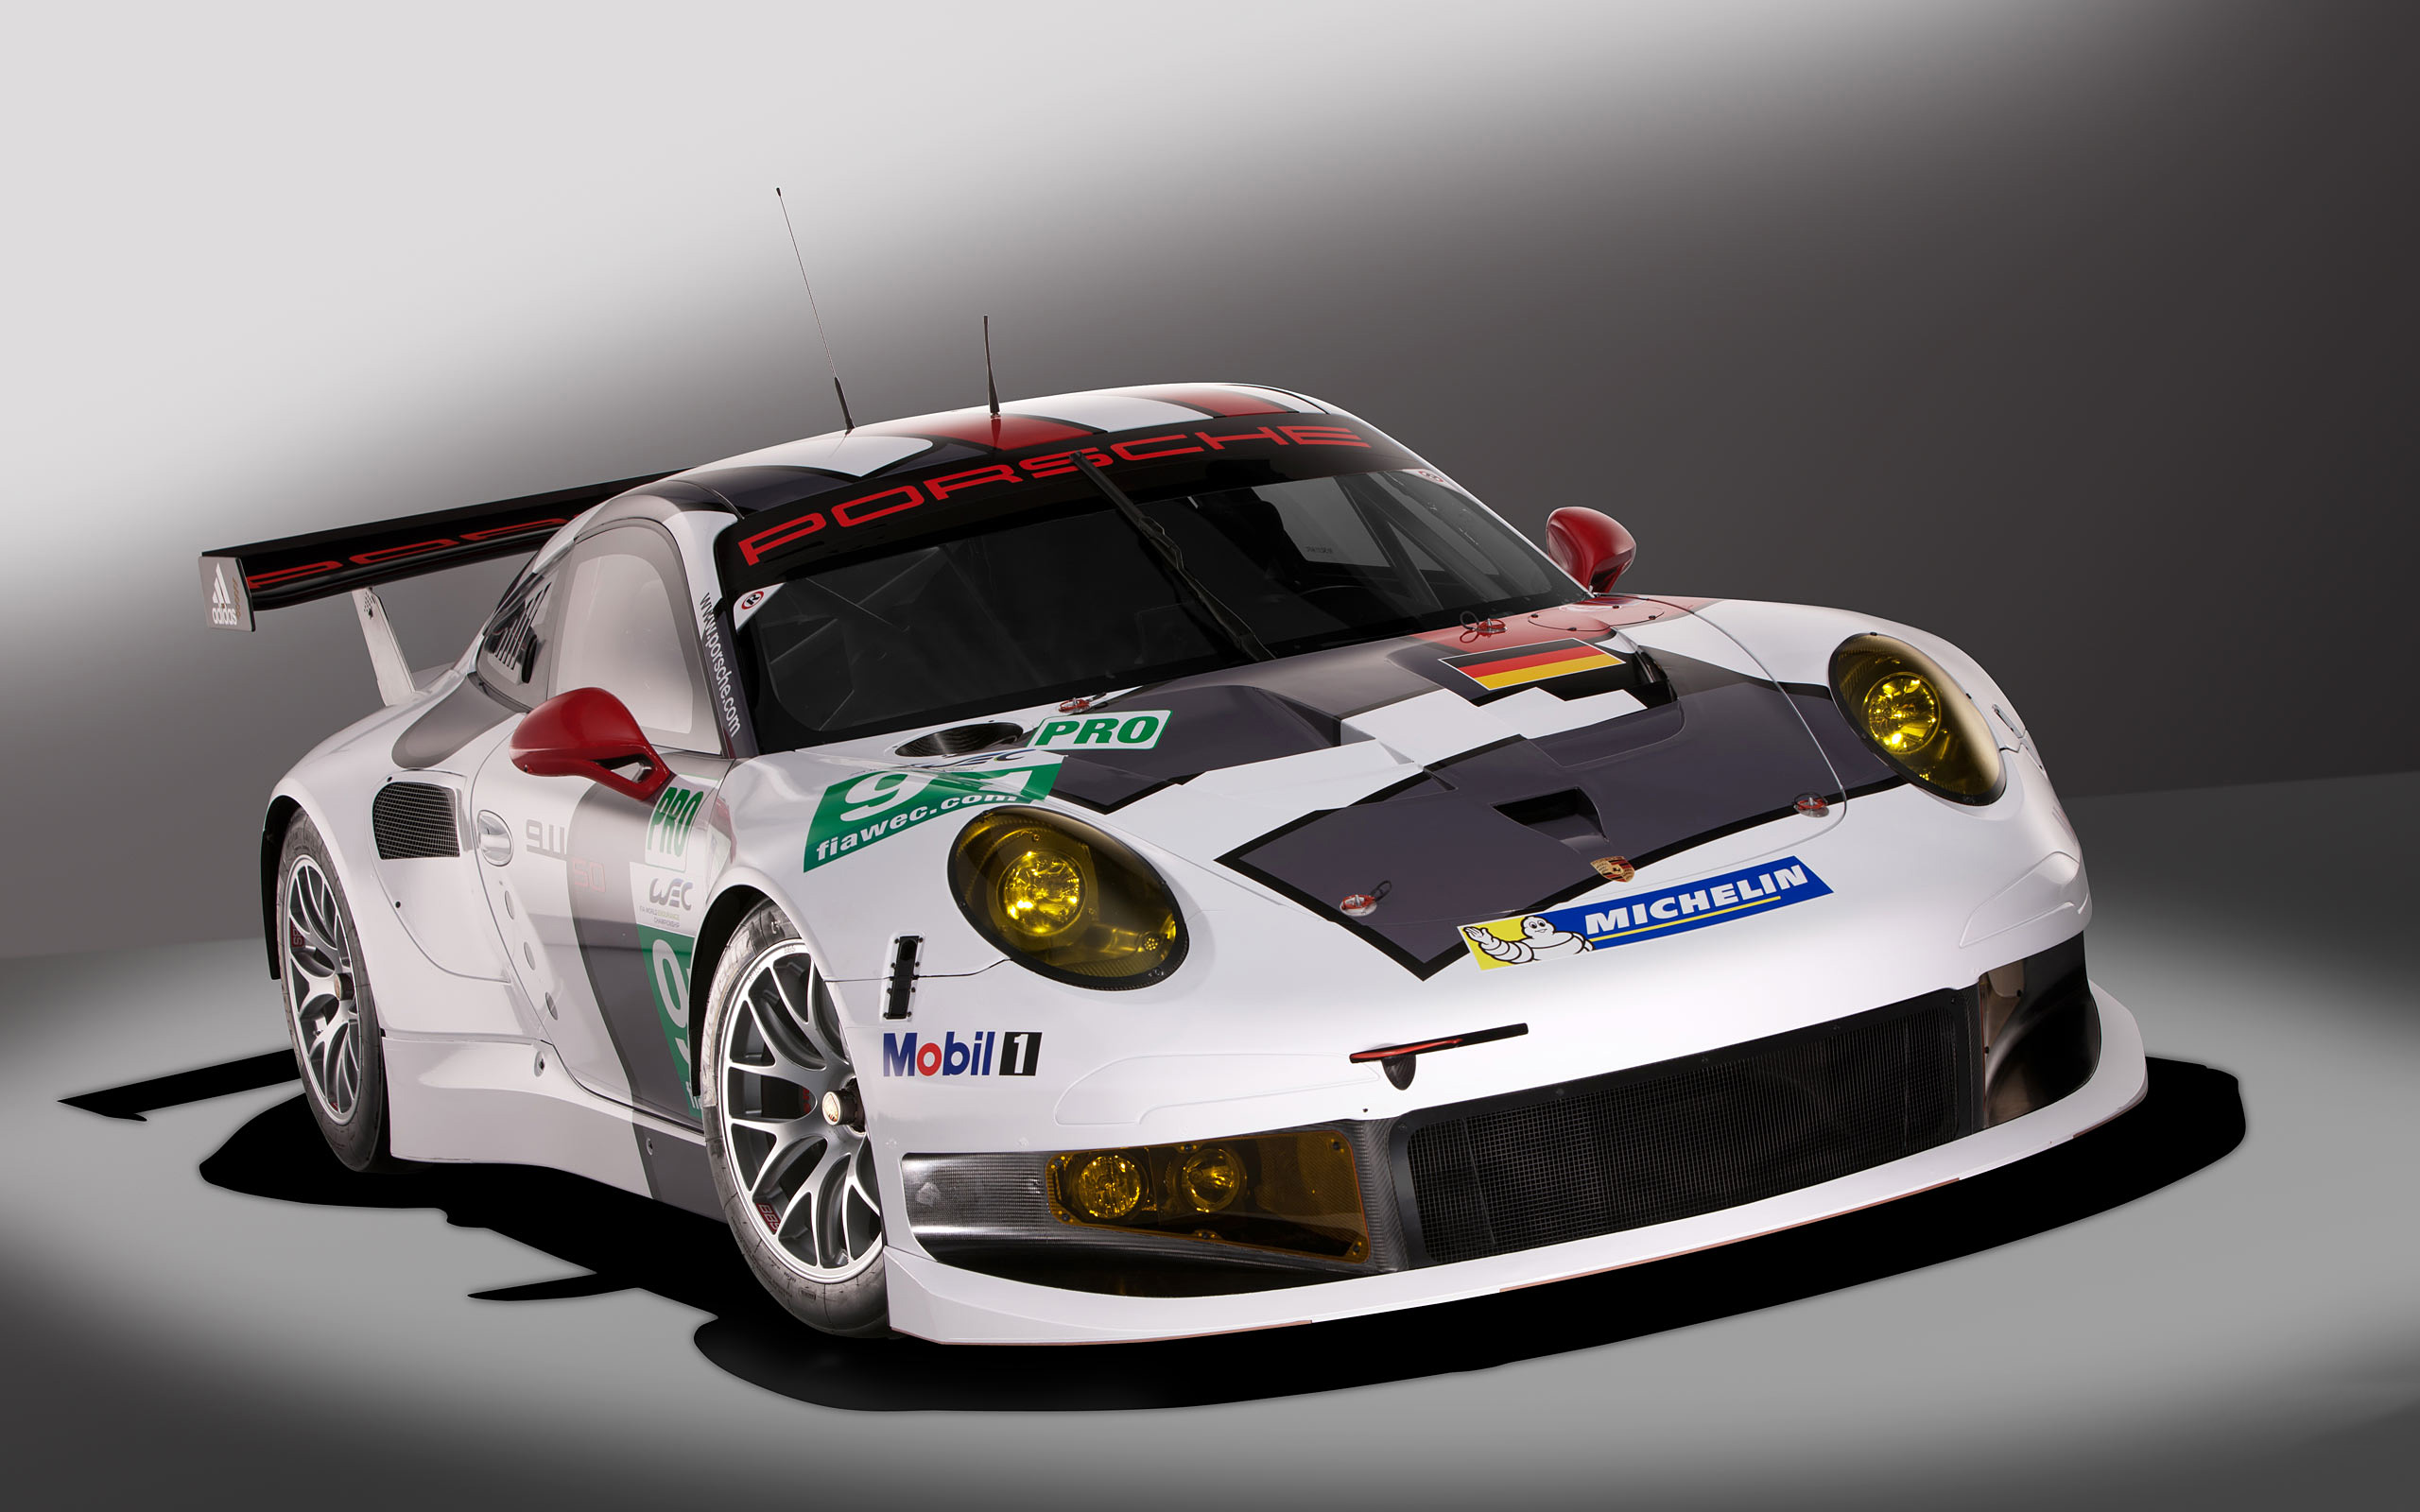 Free download wallpaper Porsche, Car, Race Car, Vehicles, Porsche 911 Rsr on your PC desktop